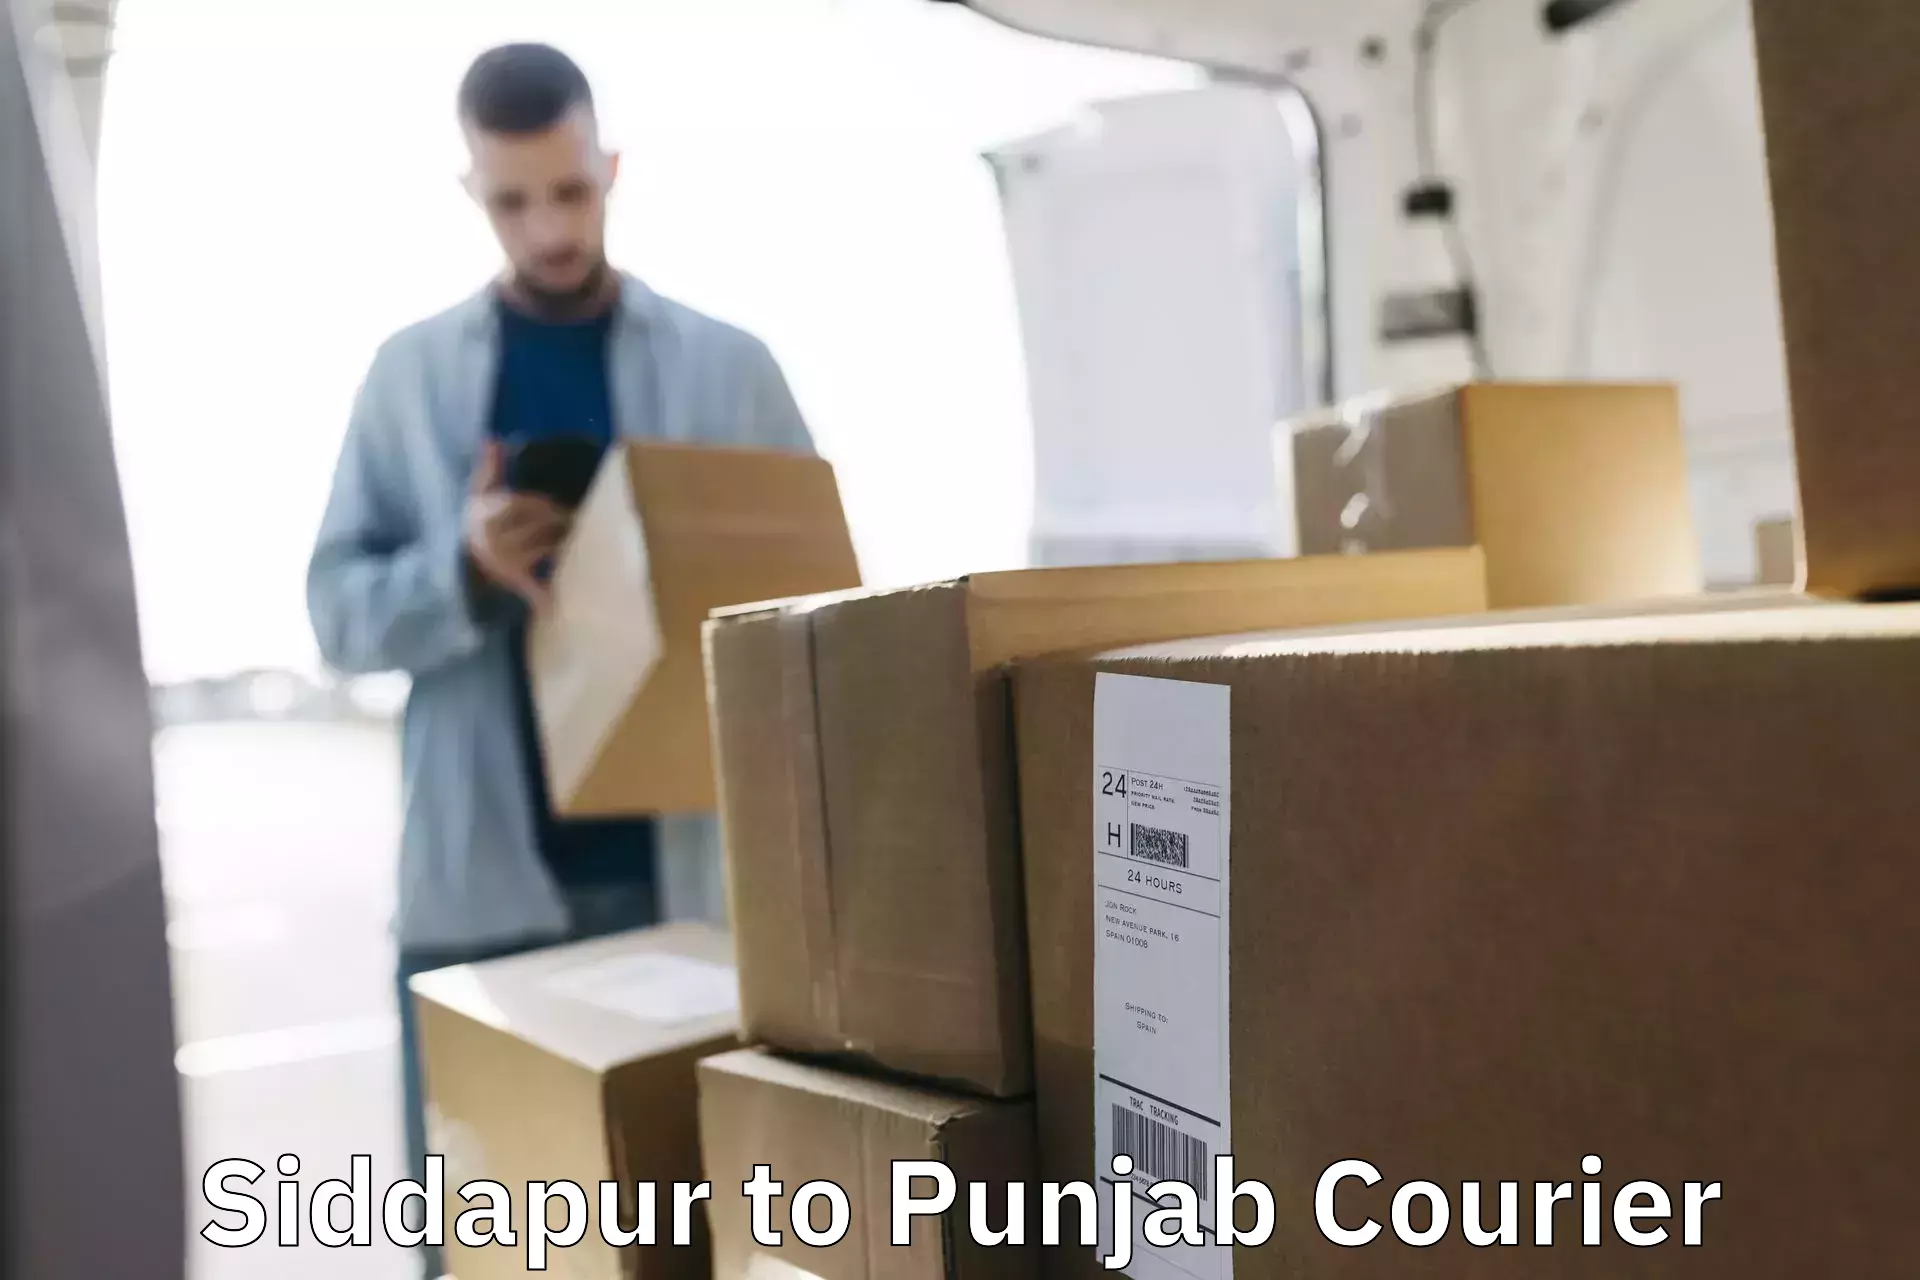 Professional parcel services Siddapur to Jalandhar